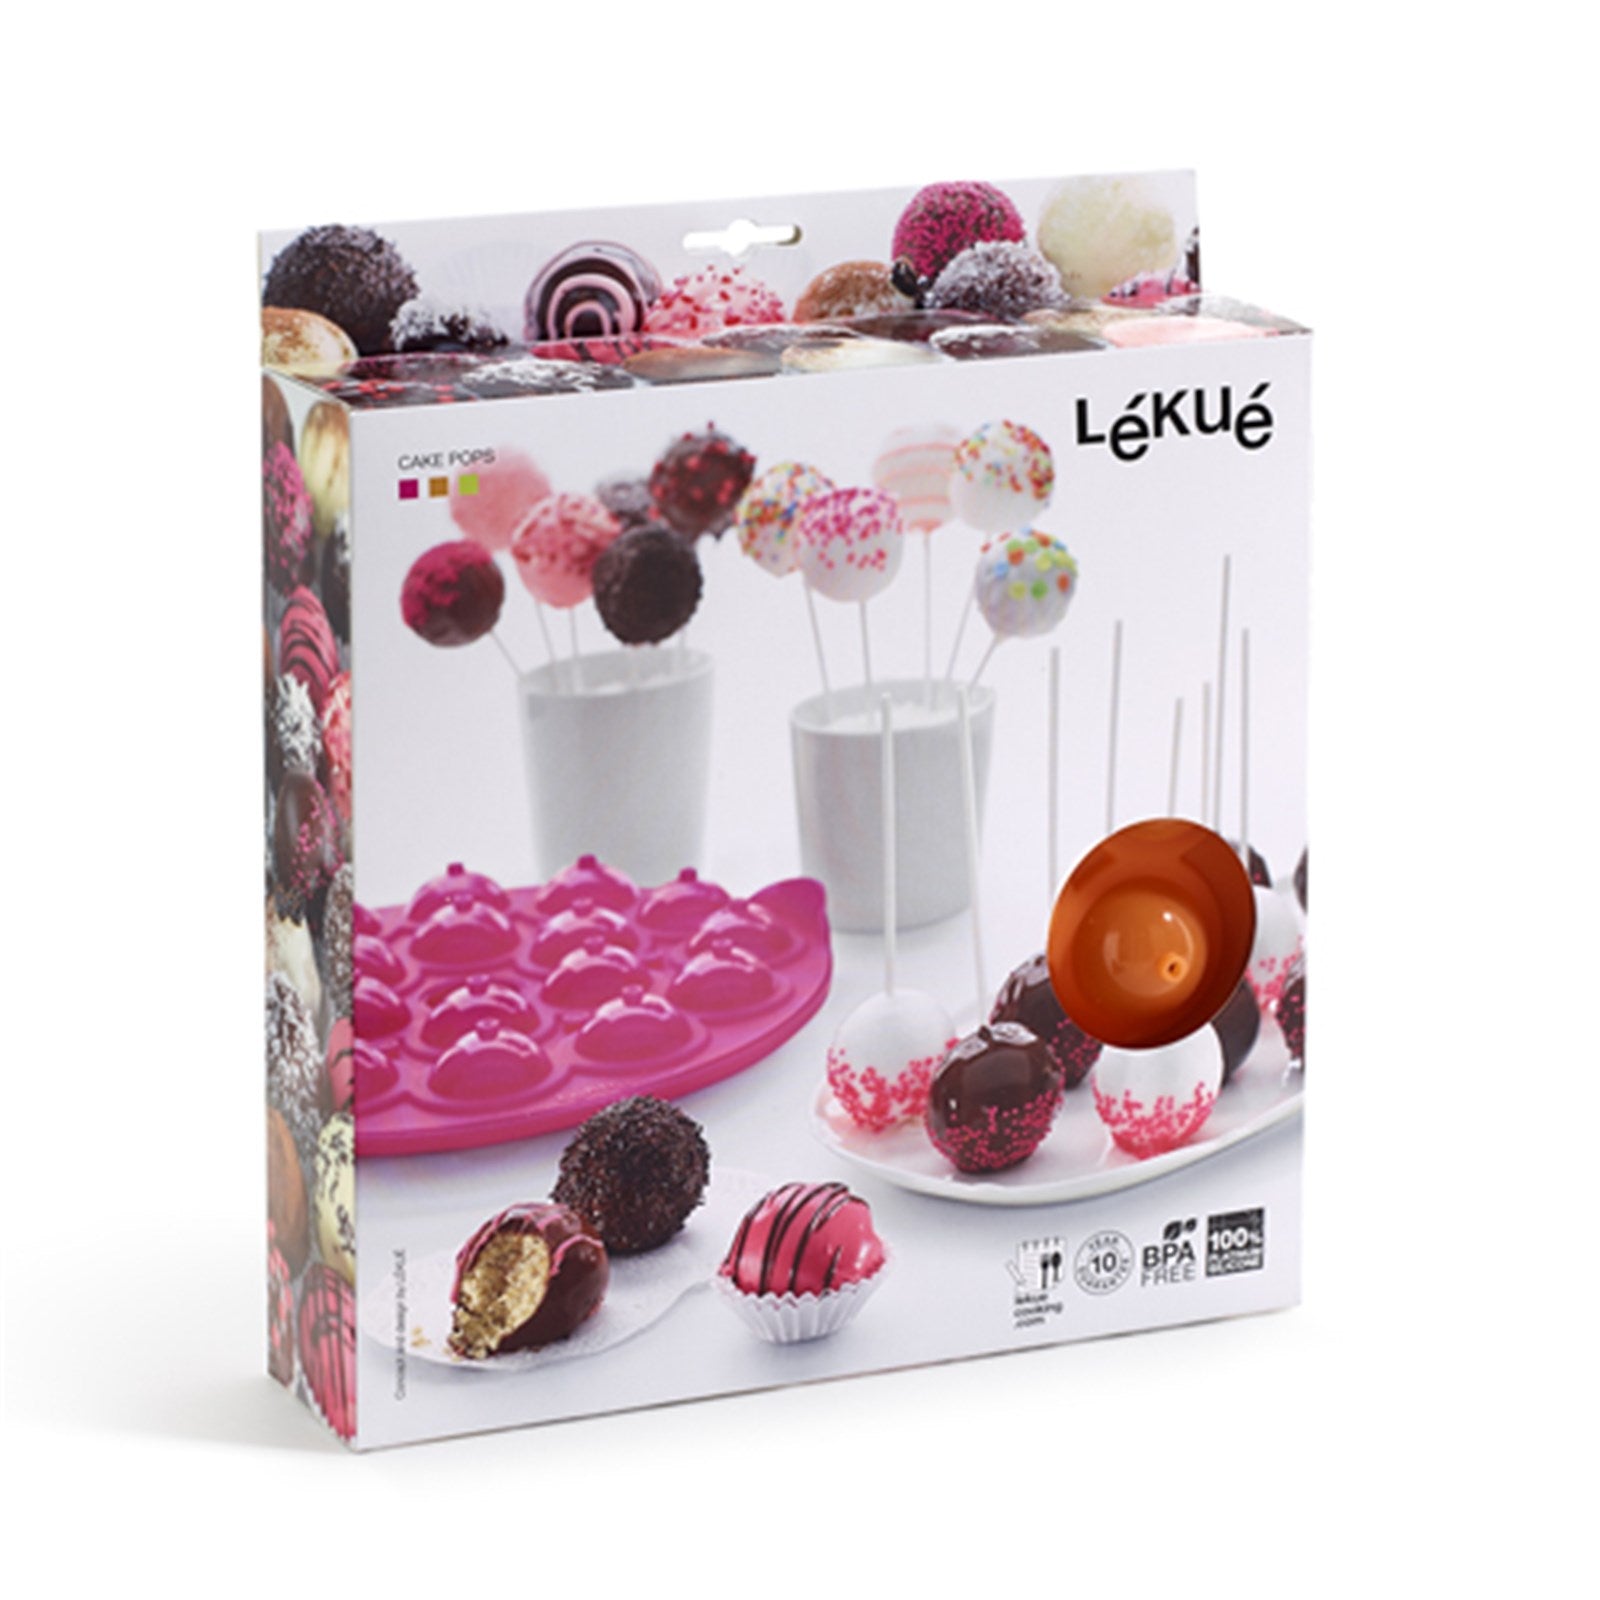 Backform Pop Cakes für 18 Stk. pink, Ø25 cm mit 20 Sticks in Pink präsentiert im Onlineshop von KAQTU Design AG. Backen ist von Lékué